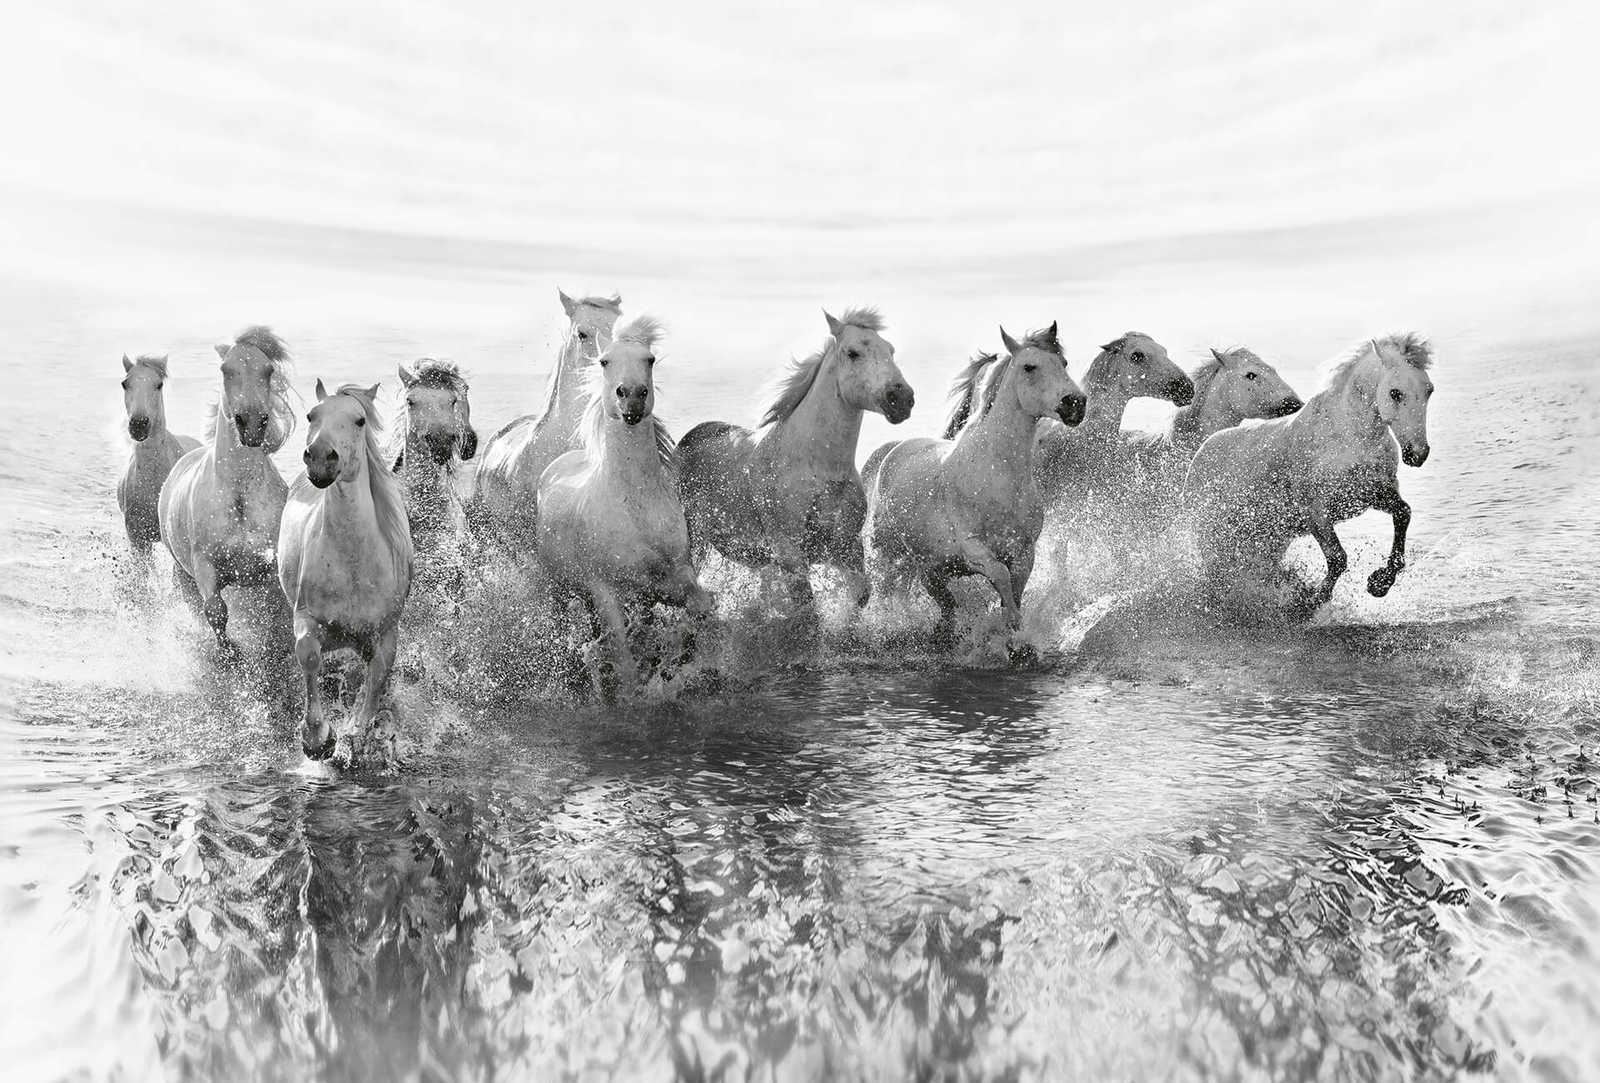         Fototapete weiße Pferde im Wasser – Weiß, Grau, Schwarz
    